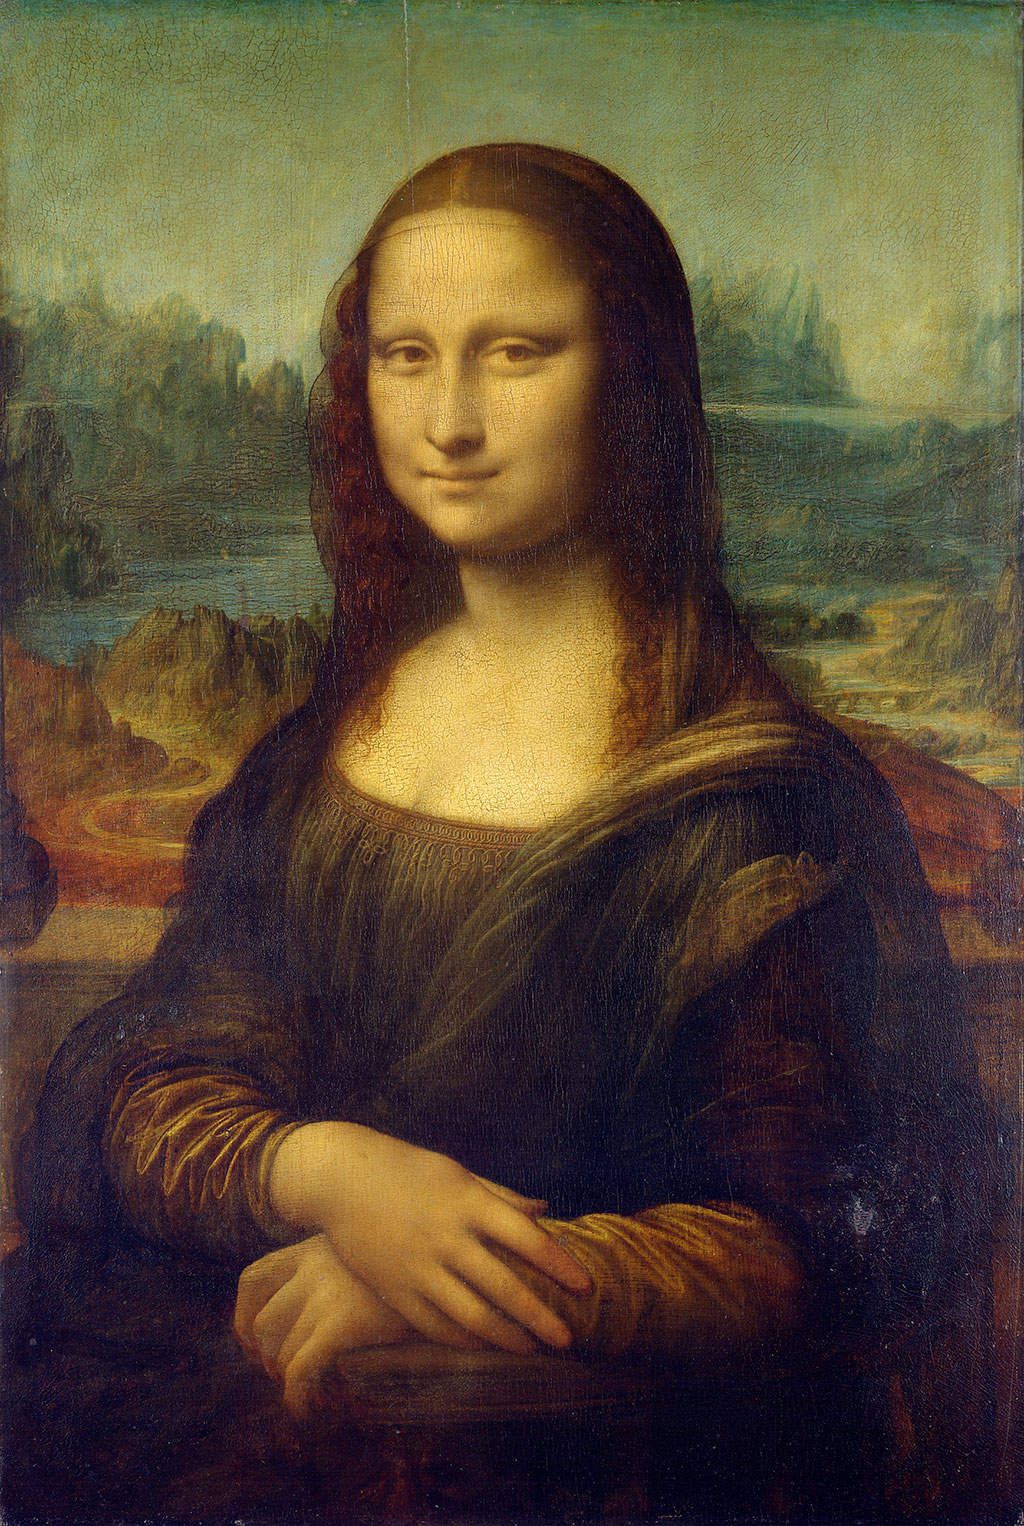 Robo del Cuadro de La Mona Lisa